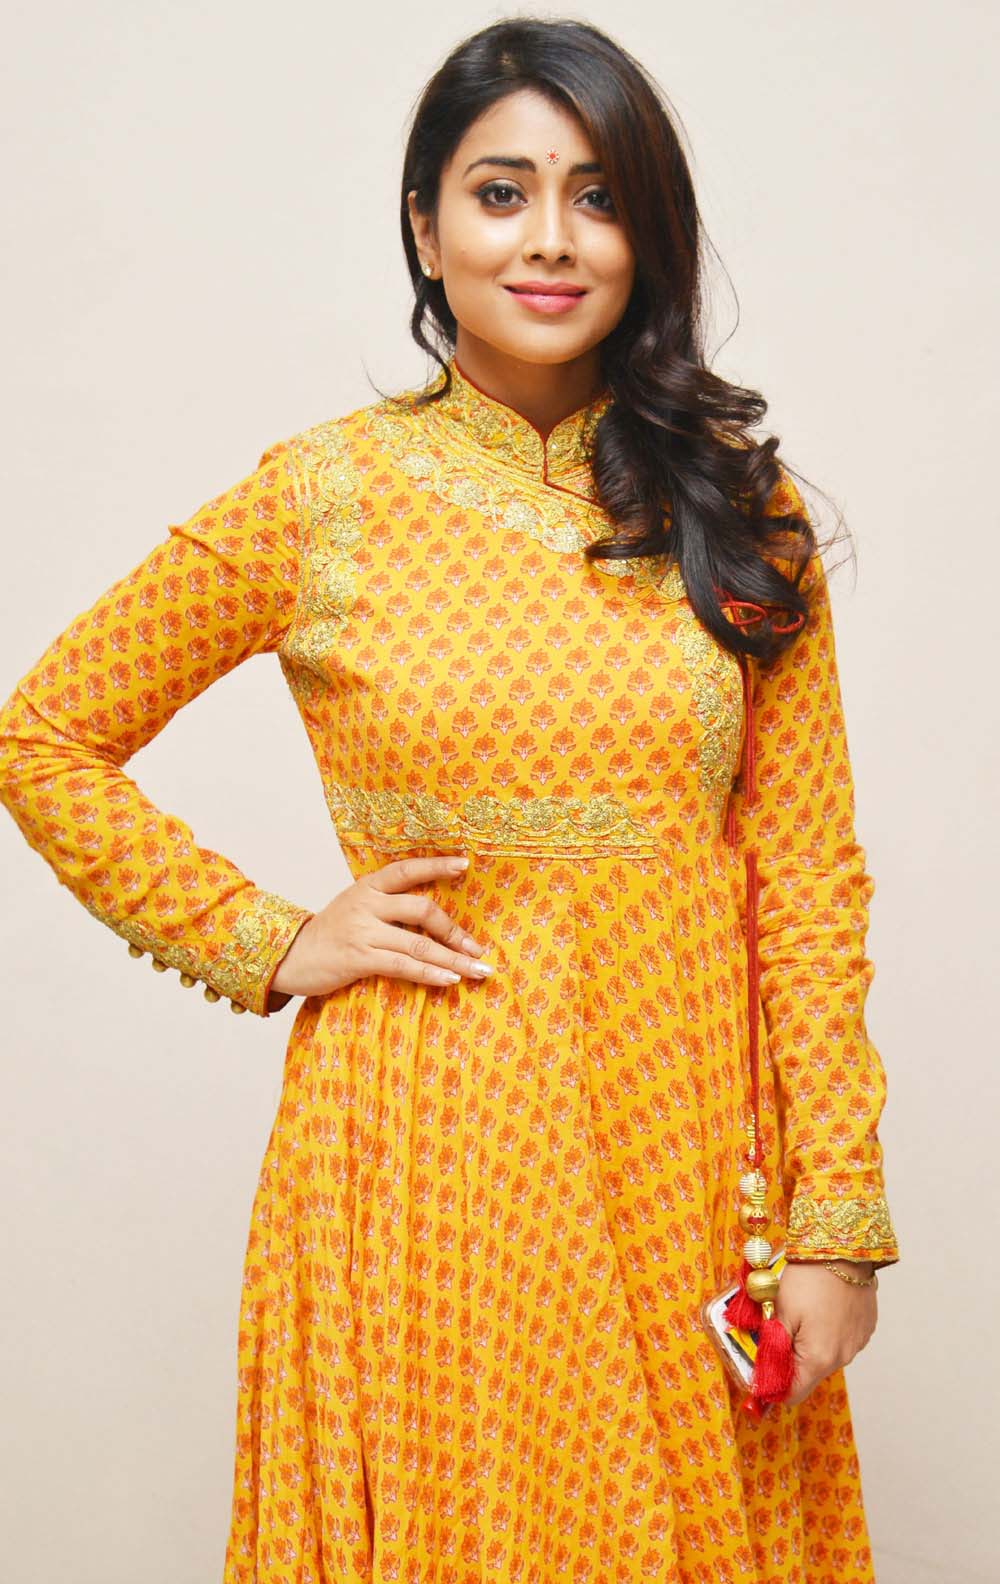 Actress Shriya Saran Photos In Yellow Dress